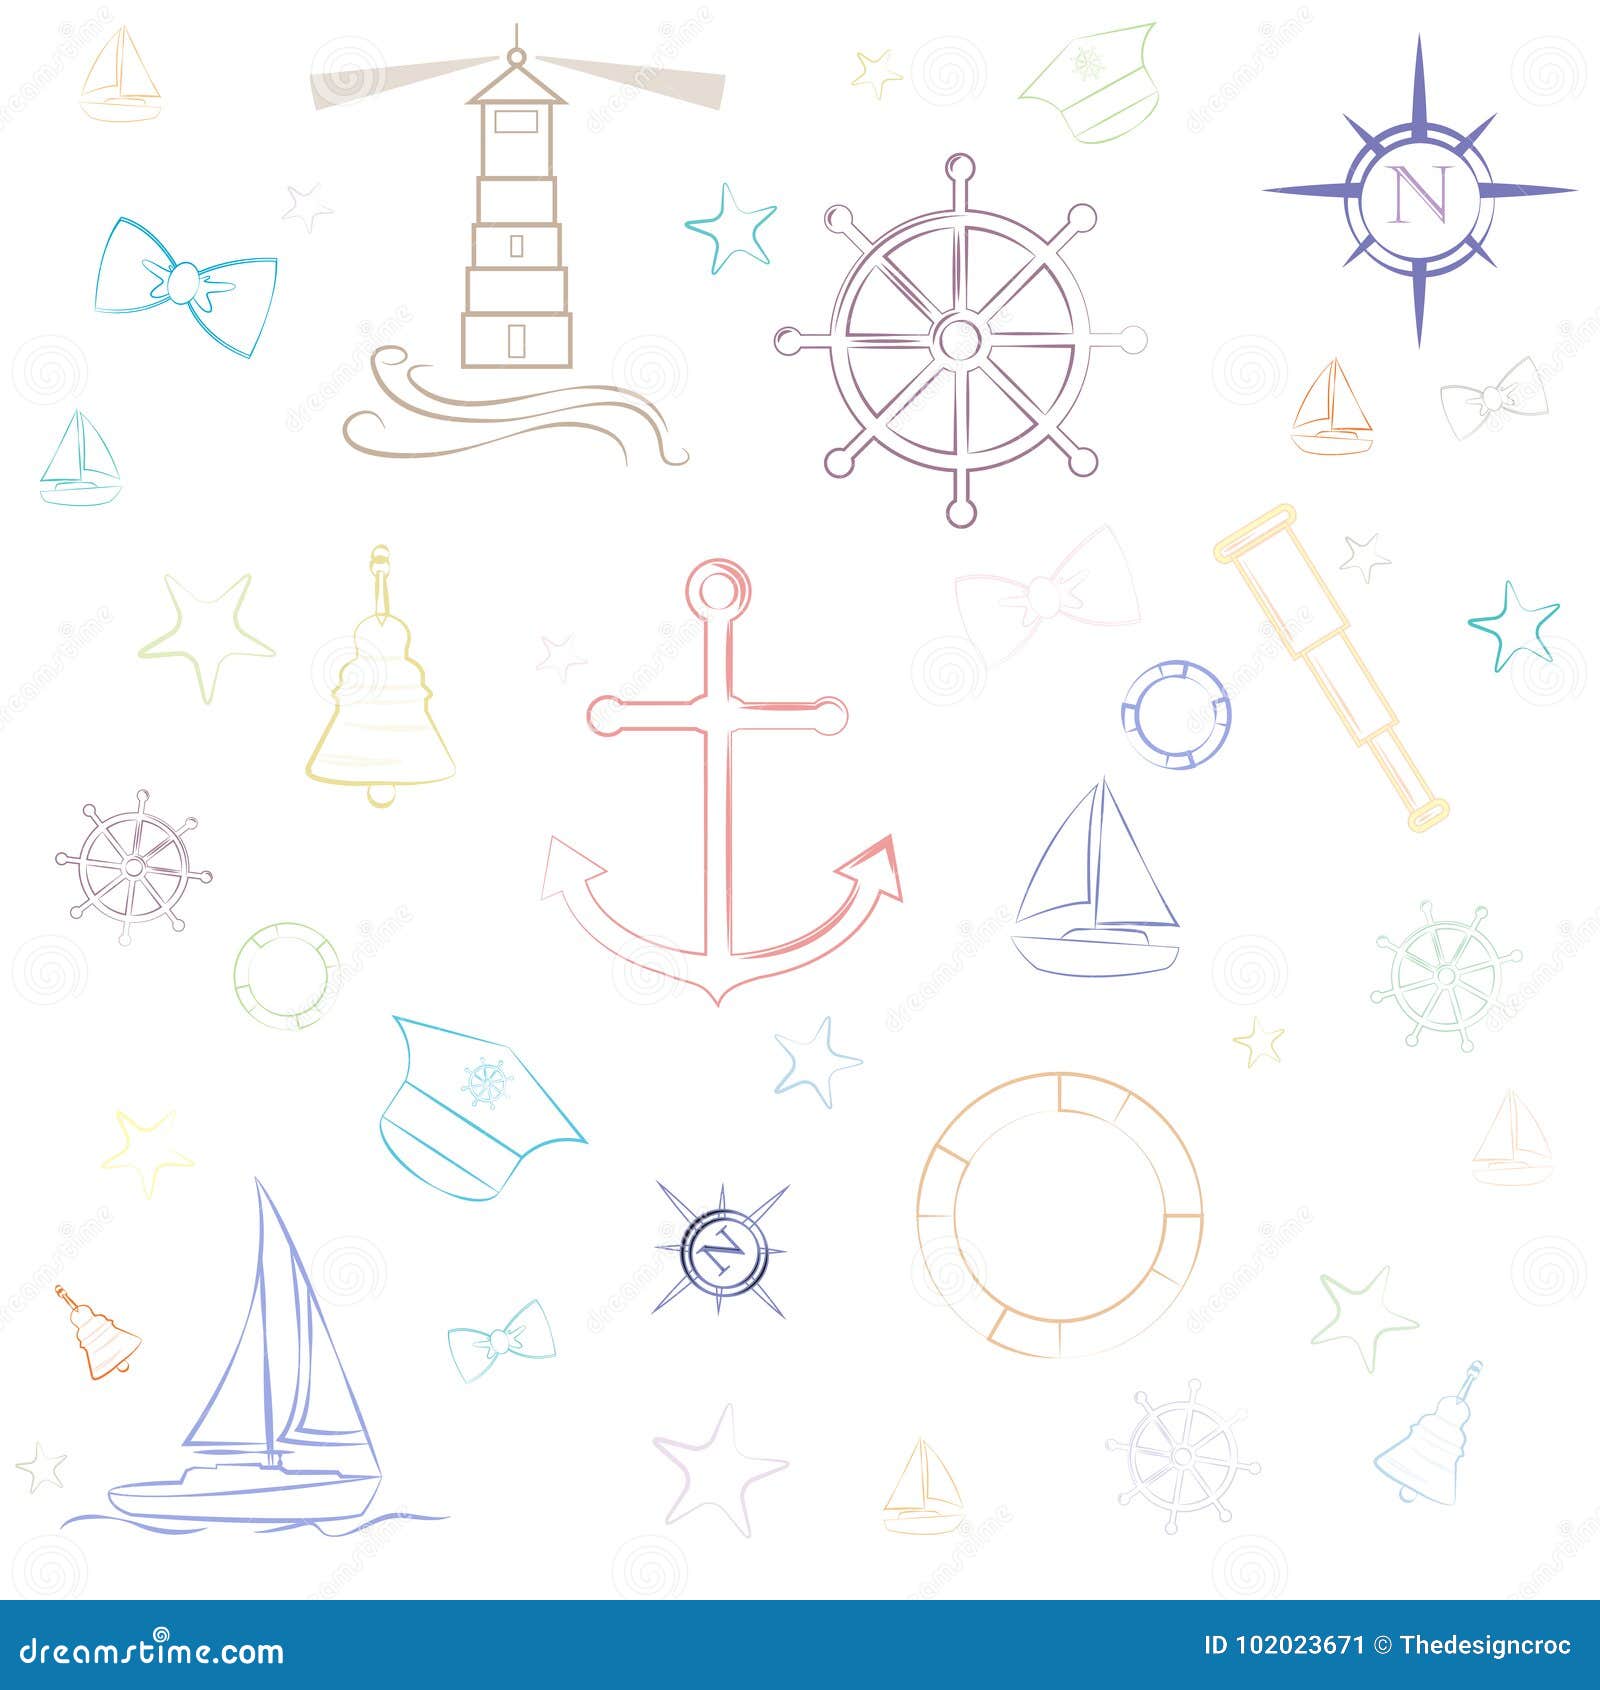 Preppy Nautical Wallpaper Pattern Vector Illustration | CartoonDealer ...